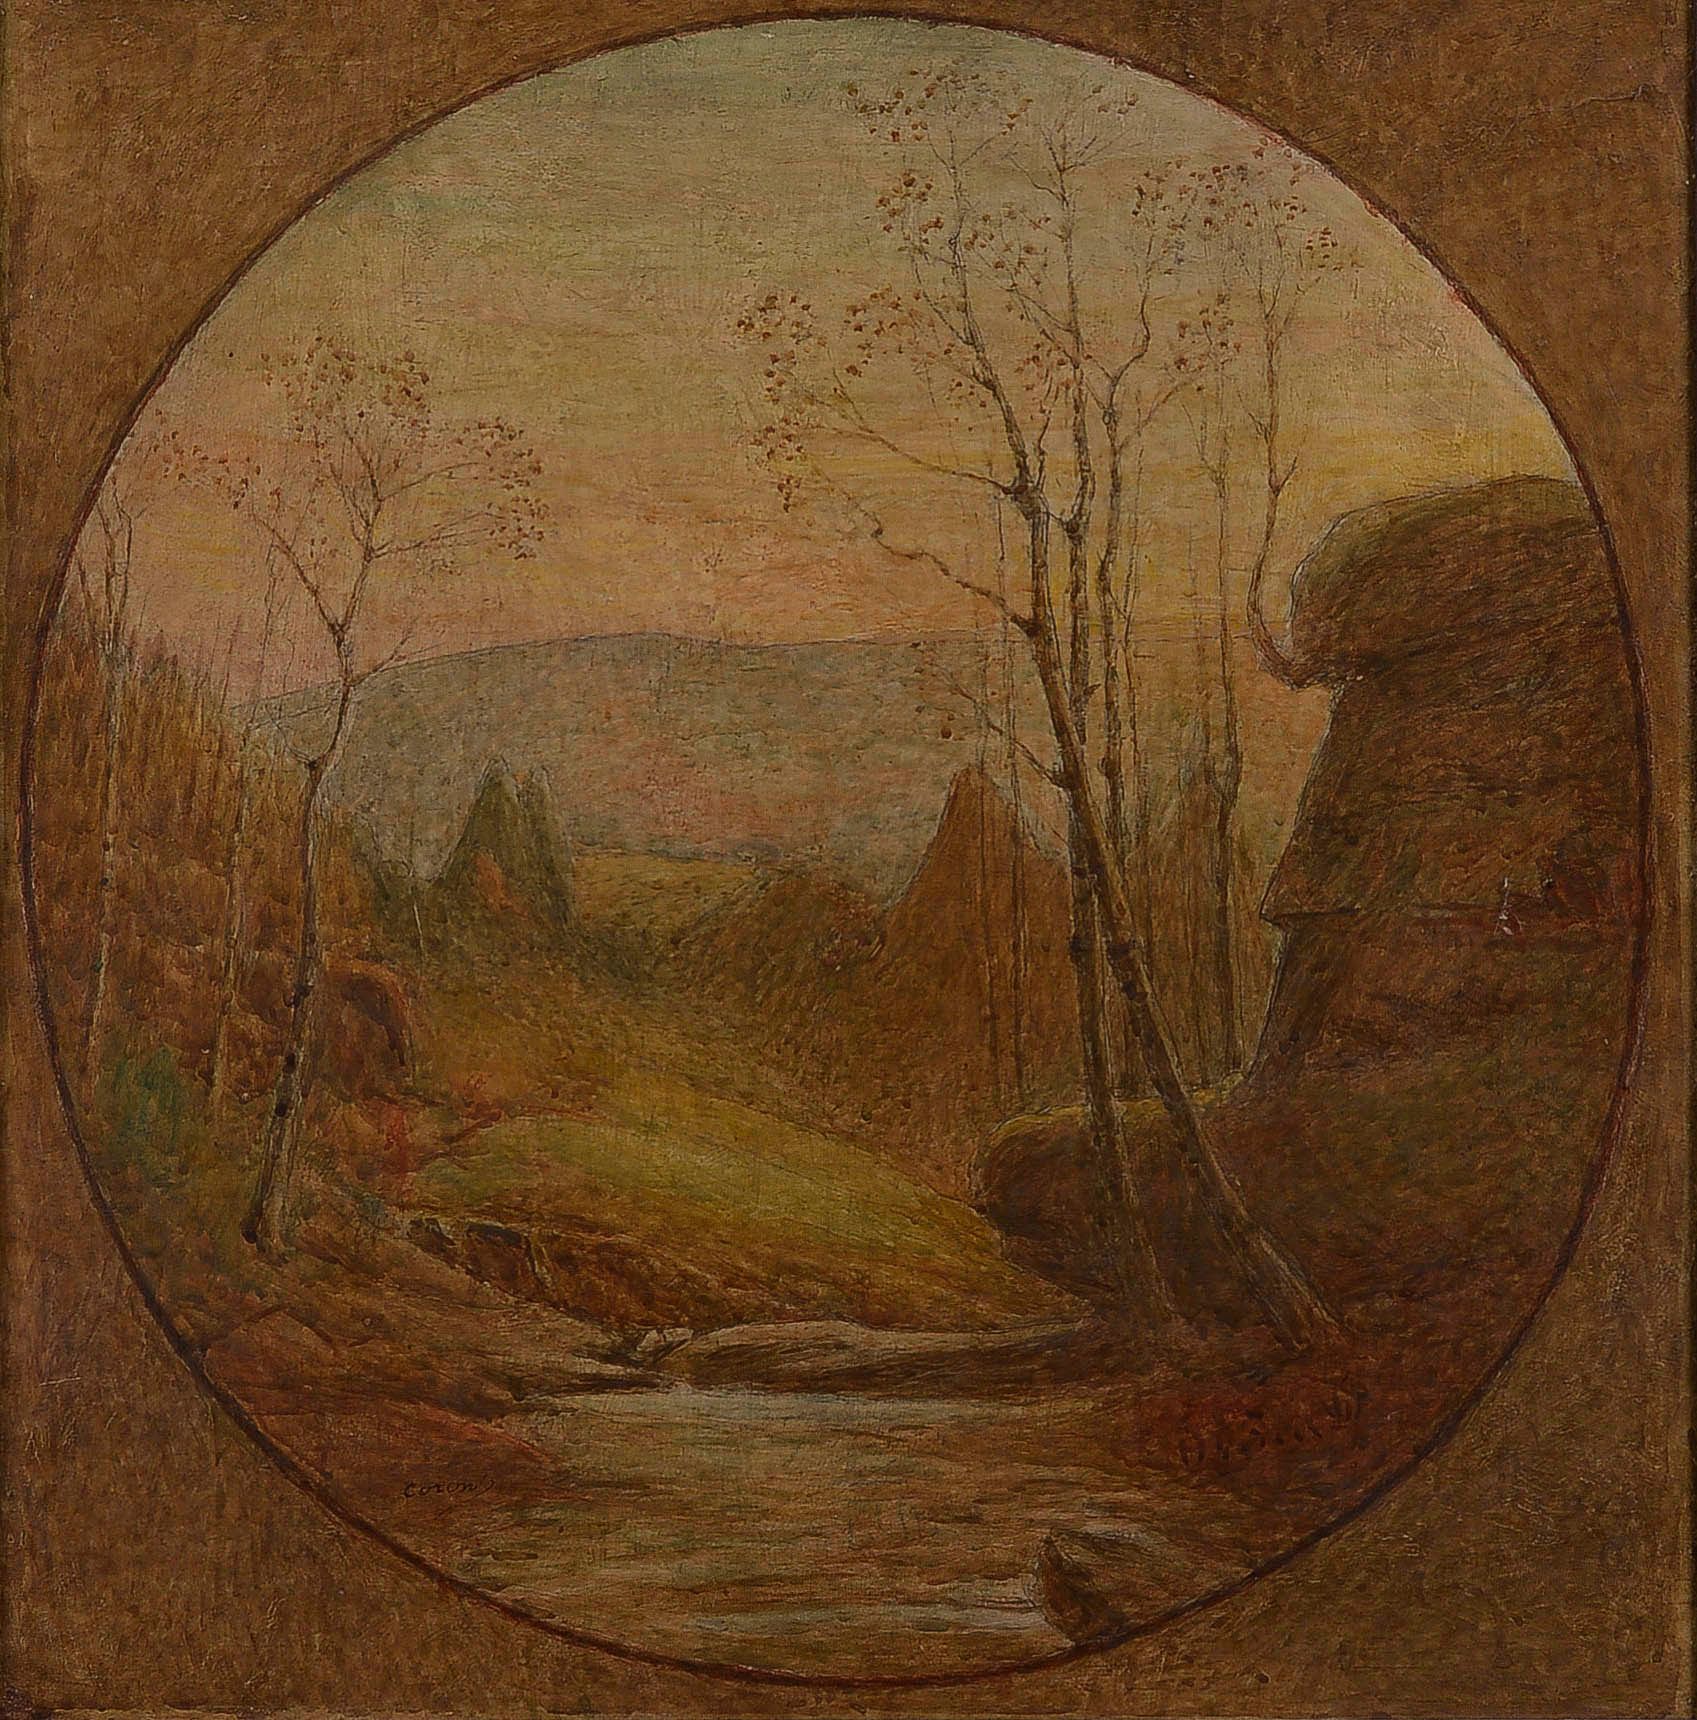 Null 约瑟夫-科隆特(1859-1934)

景观与磨石

布面油画，圆形视图，装在面板上，左下角有签名

61 x 60厘米